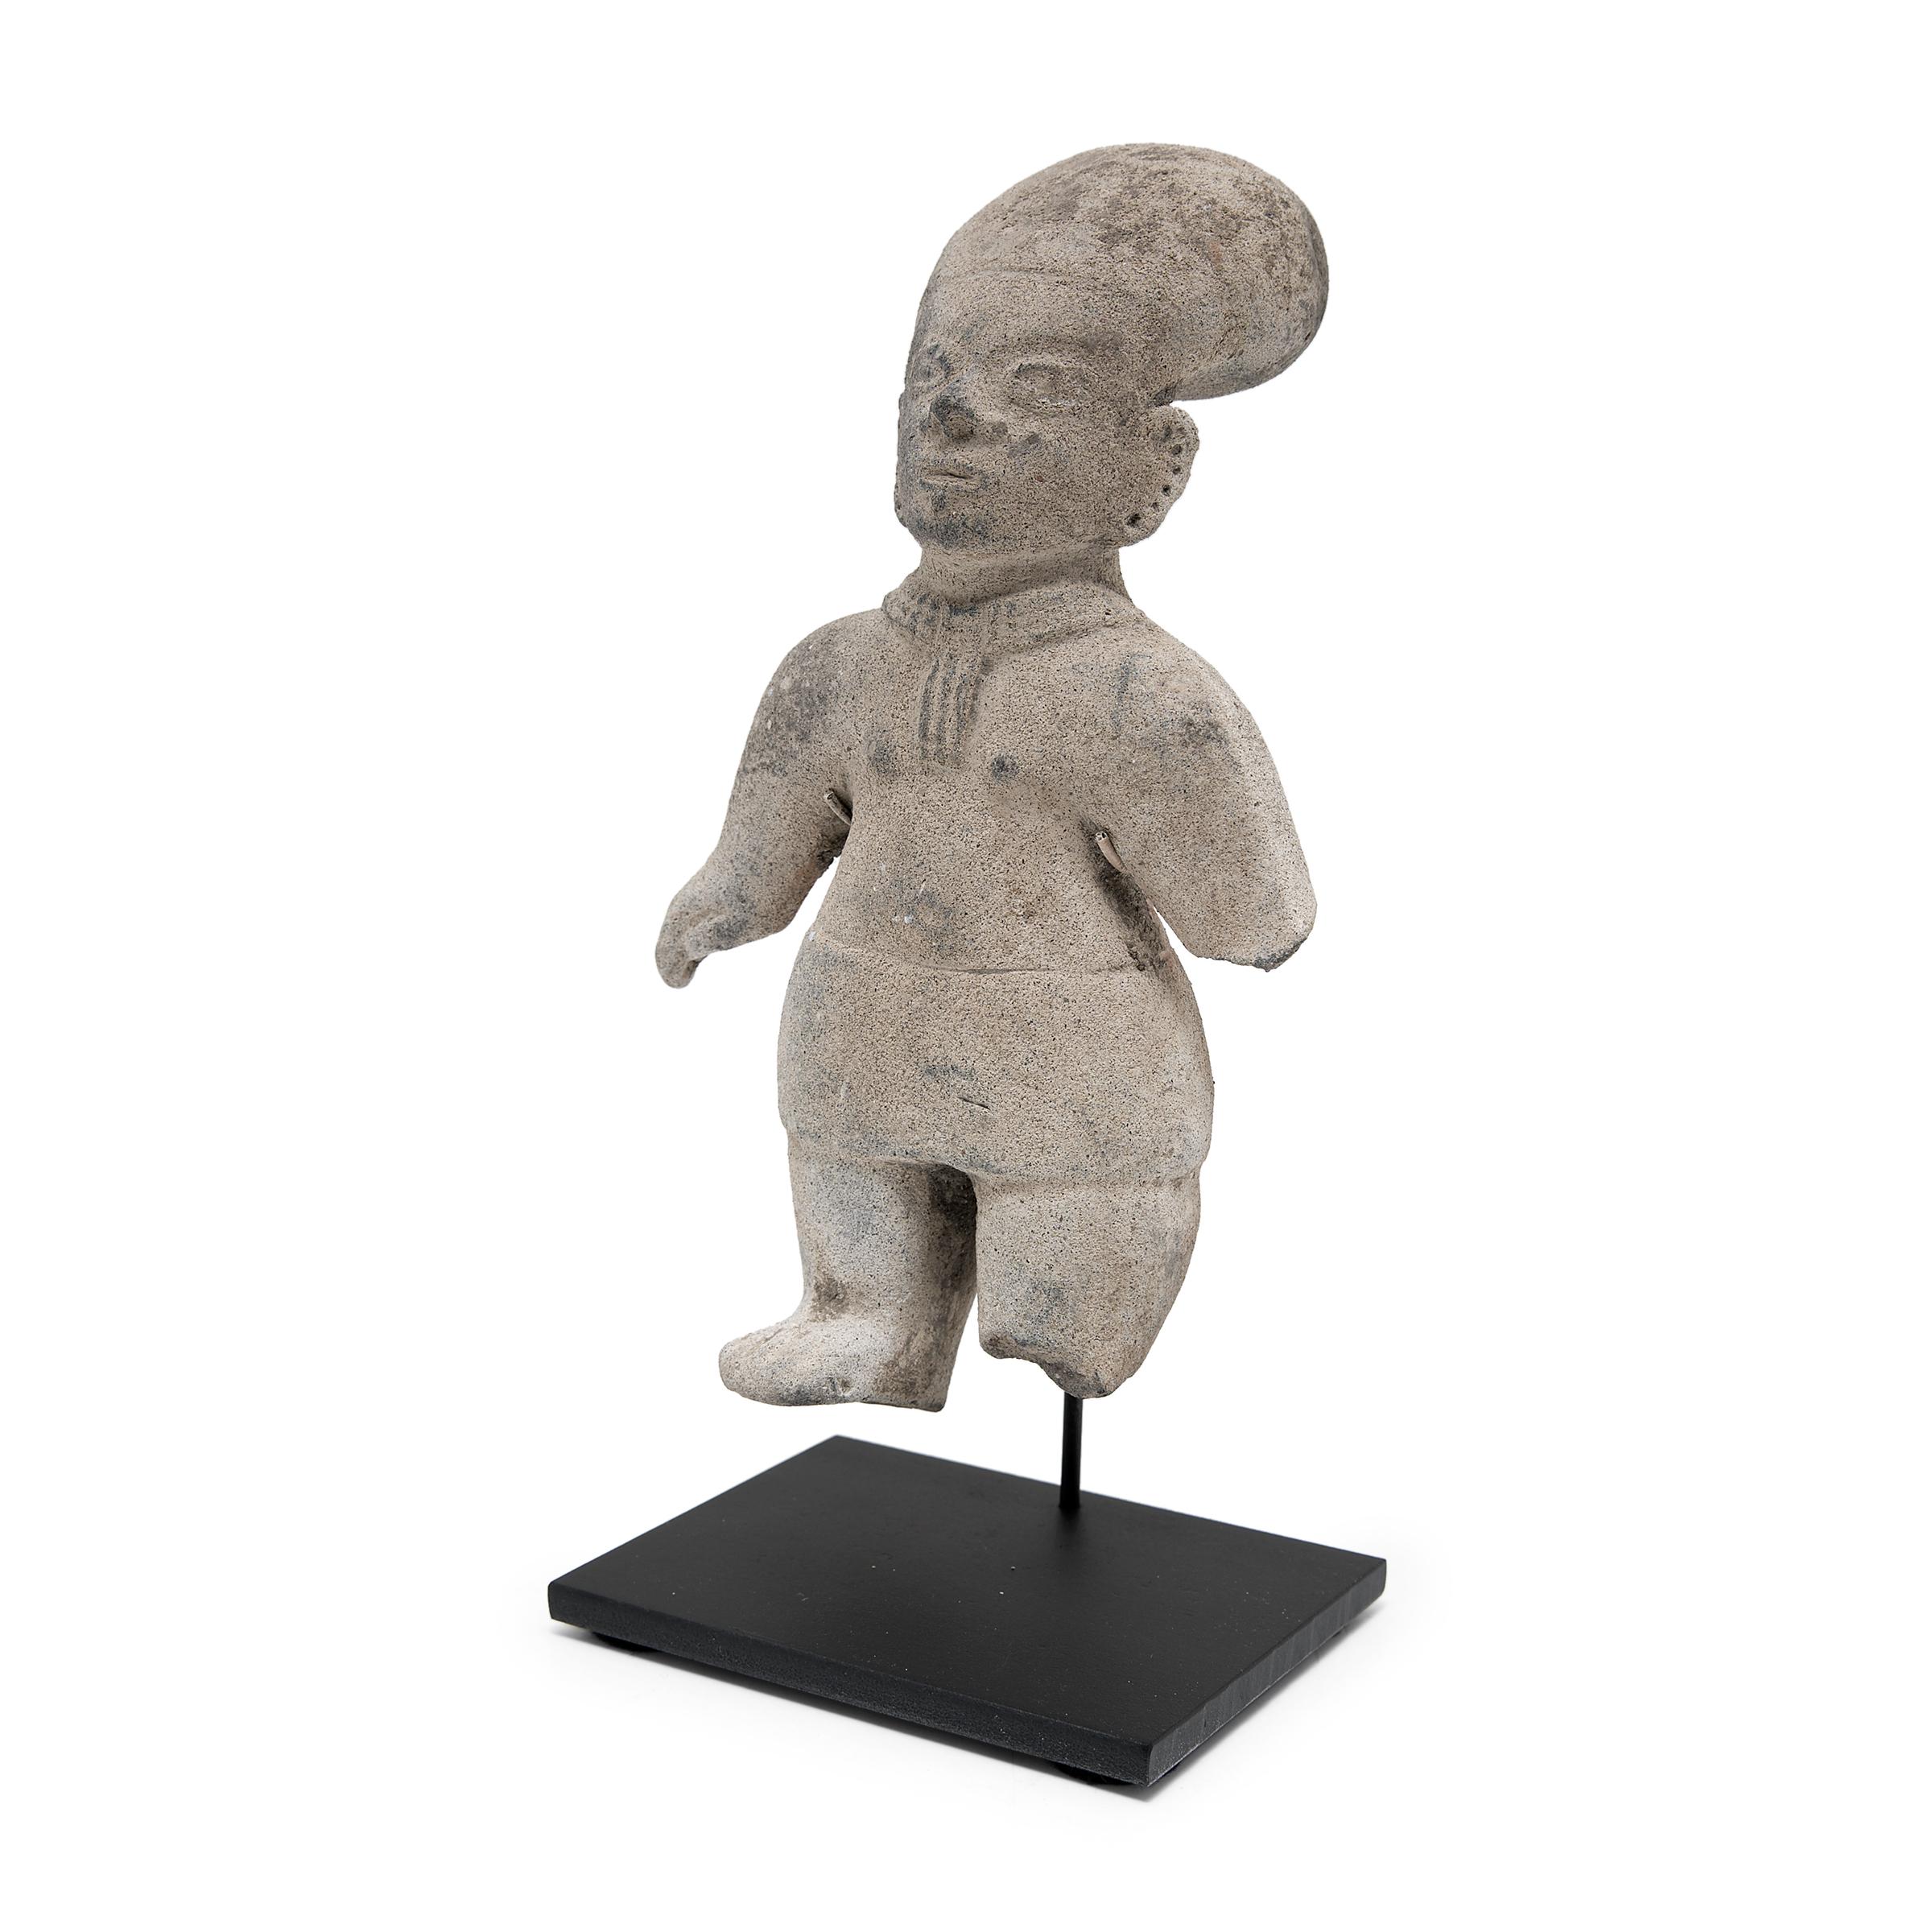 Cette effigie debout a été fabriquée entre 500 et 1000 ans après Jésus-Christ. Mésoamérique en utilisant la pâte d'argile grise qui caractérise les céramiques de La Tolita-Tumaco du début de la Colombie-Équateur. L'art de la civilisation